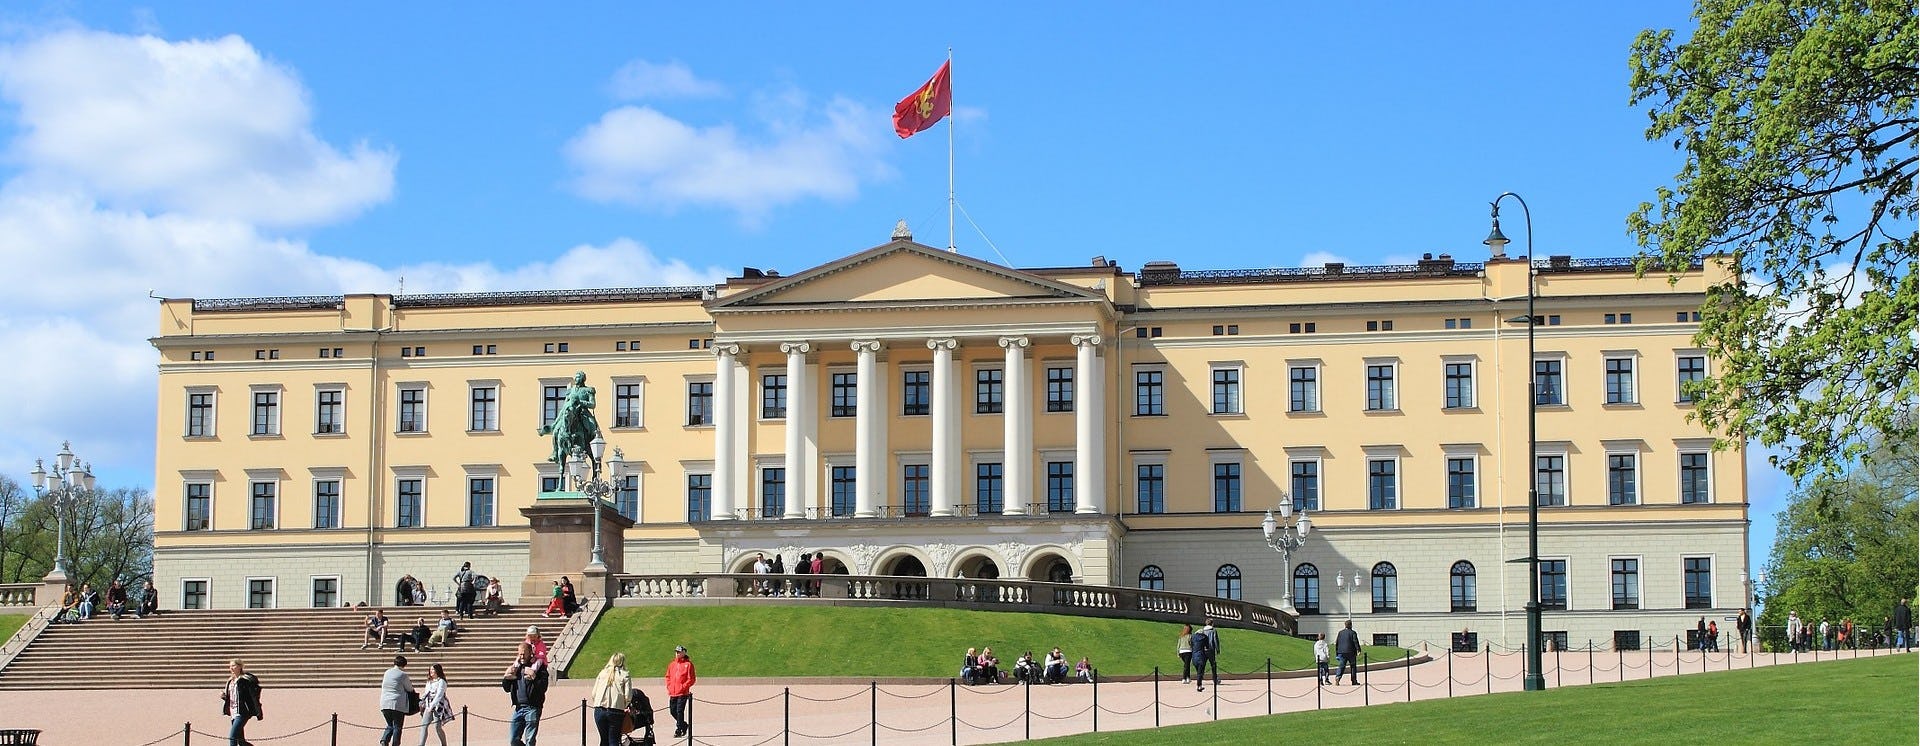 Det kongelige slott i Oslo